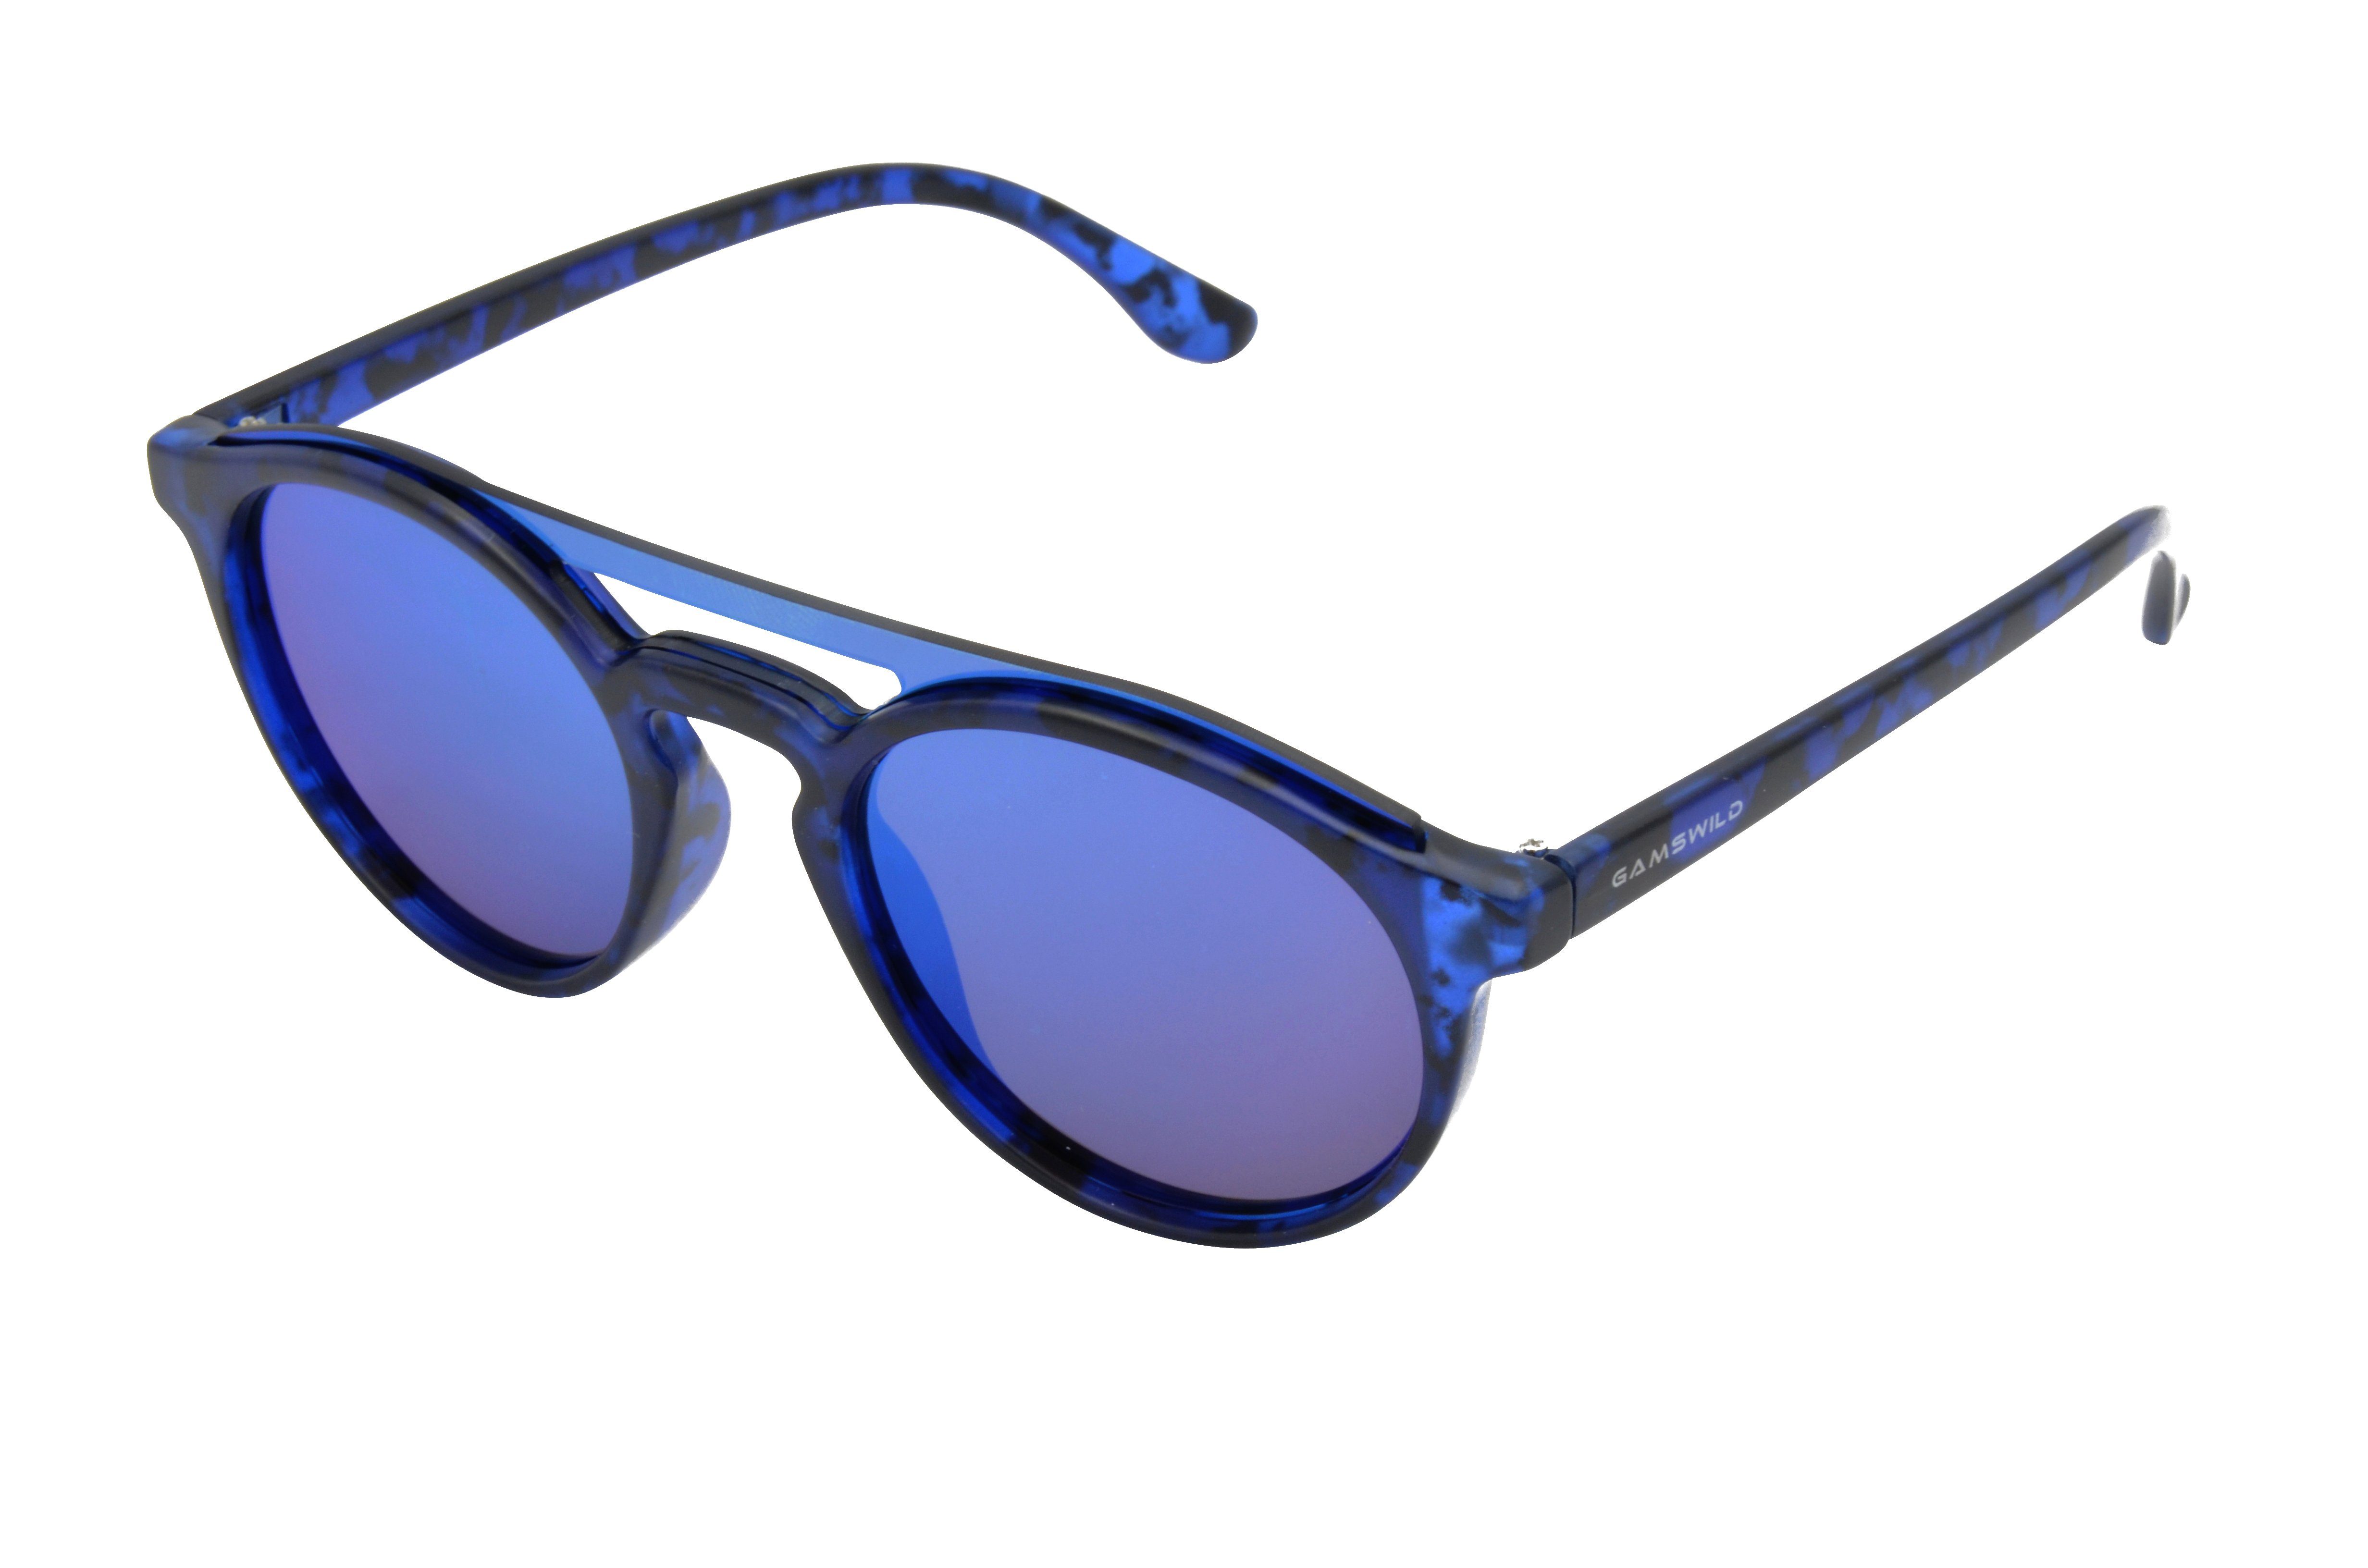 Gamswild Sonnenbrille WM1221 braun Unisex Brille blau, Fashionbrille, grün, GAMSSTYLE grün, Herren Damen Mode